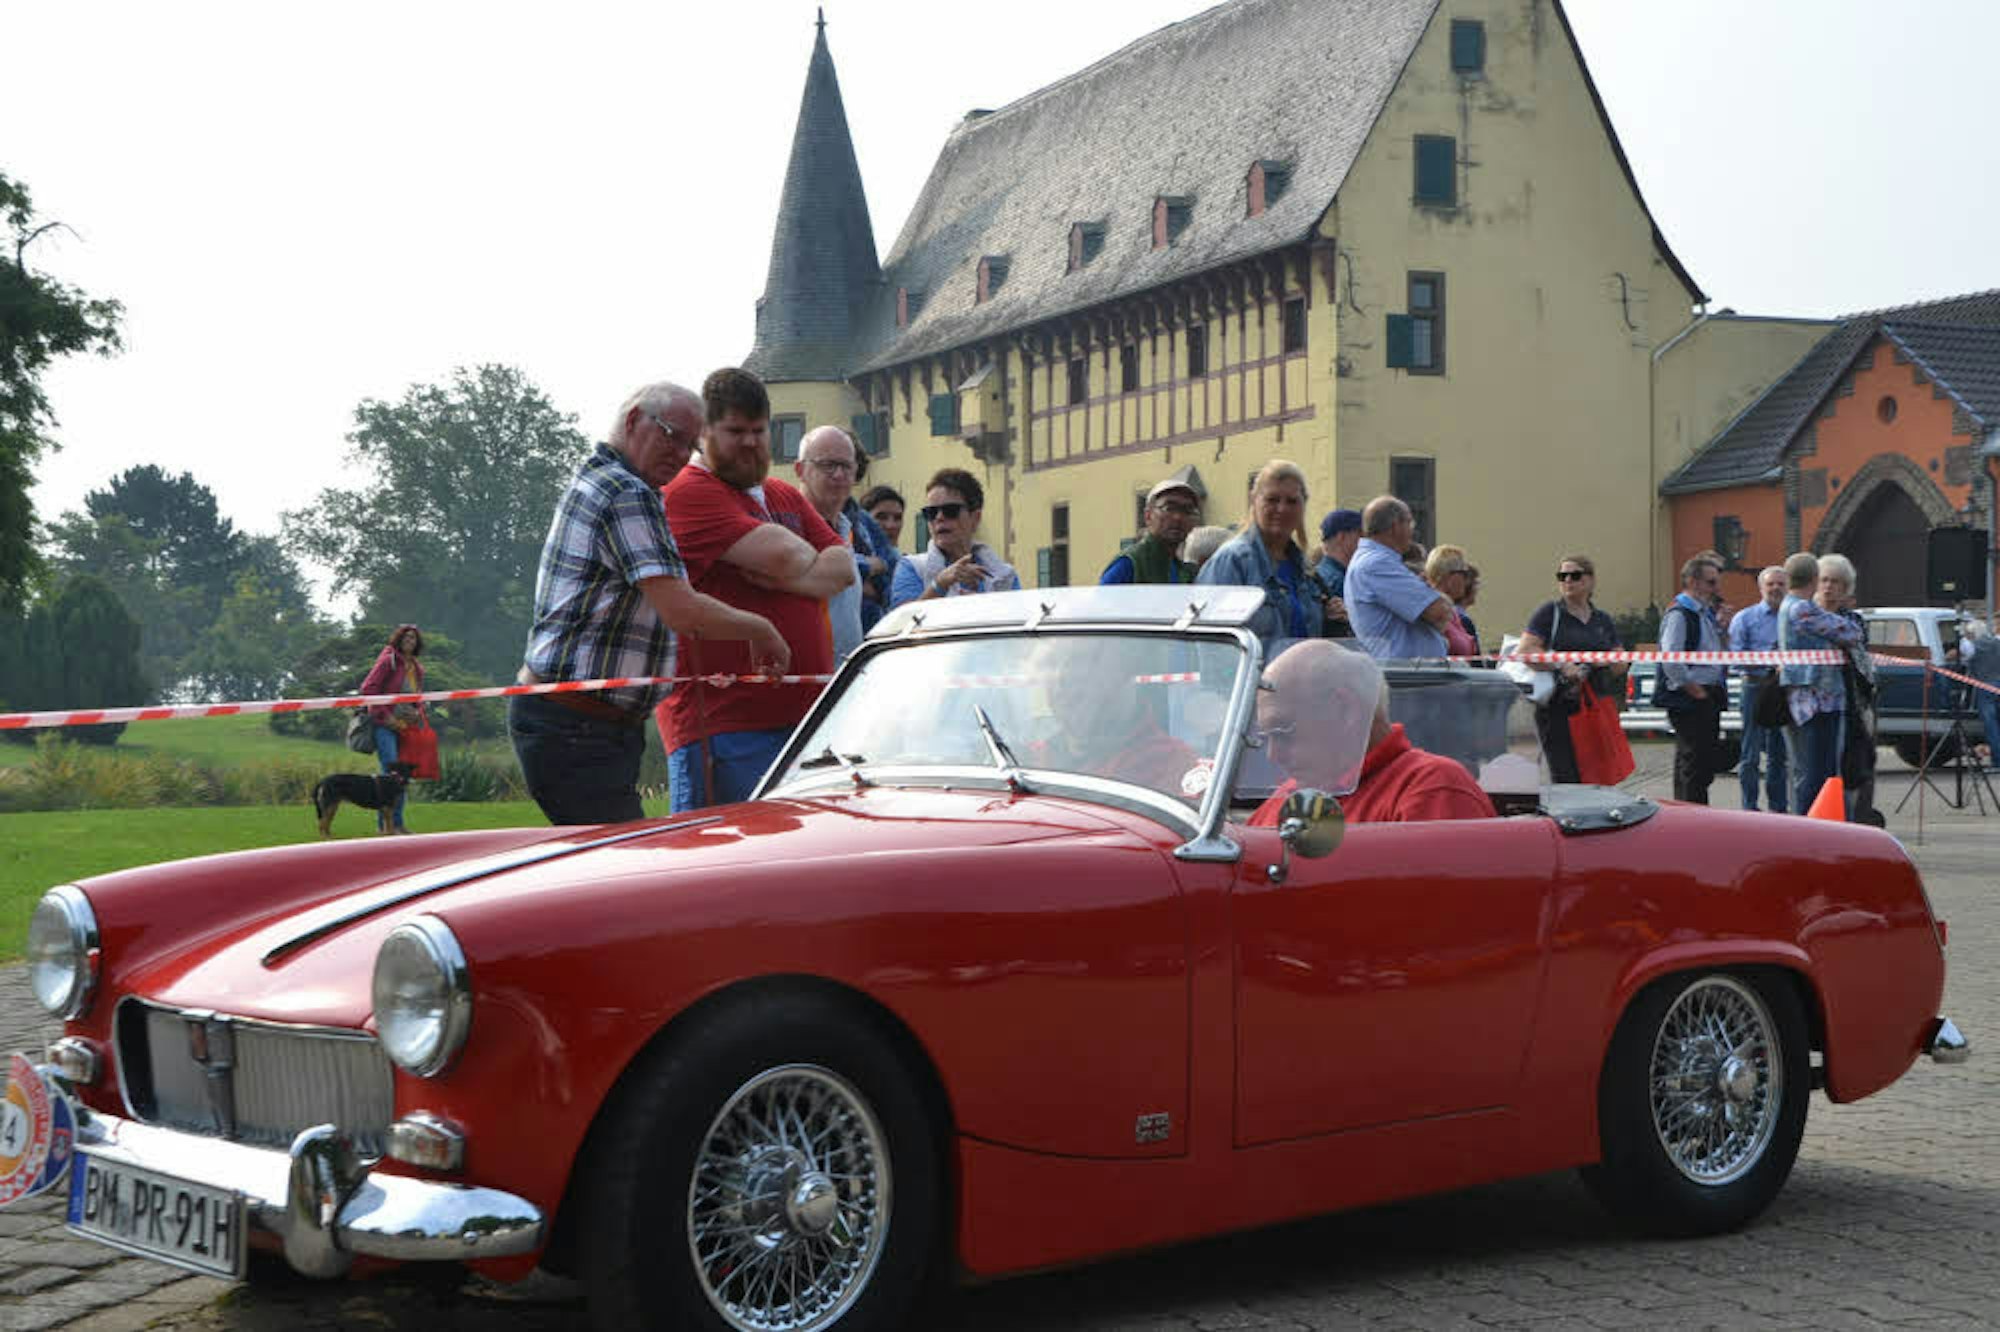 Im beschaulichen Ambiente der Burg Langendorf begannen die Teilnehmer der Oldtimerrallye ihre Fahrt durch die Eifel.